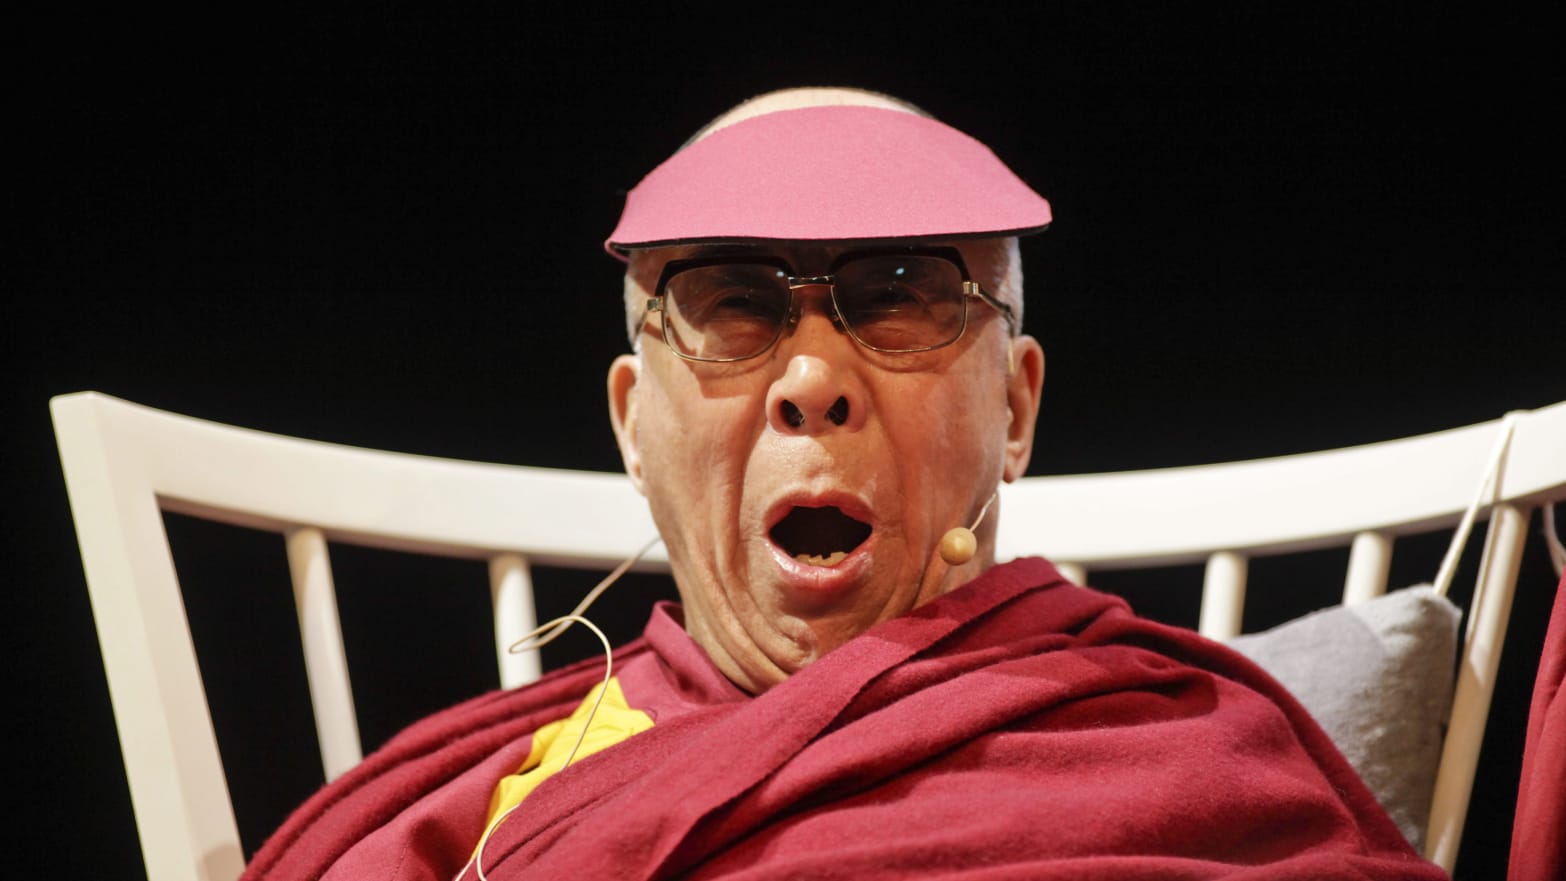 Tres escándalos del Dalái Lama antes del polémico beso al niño